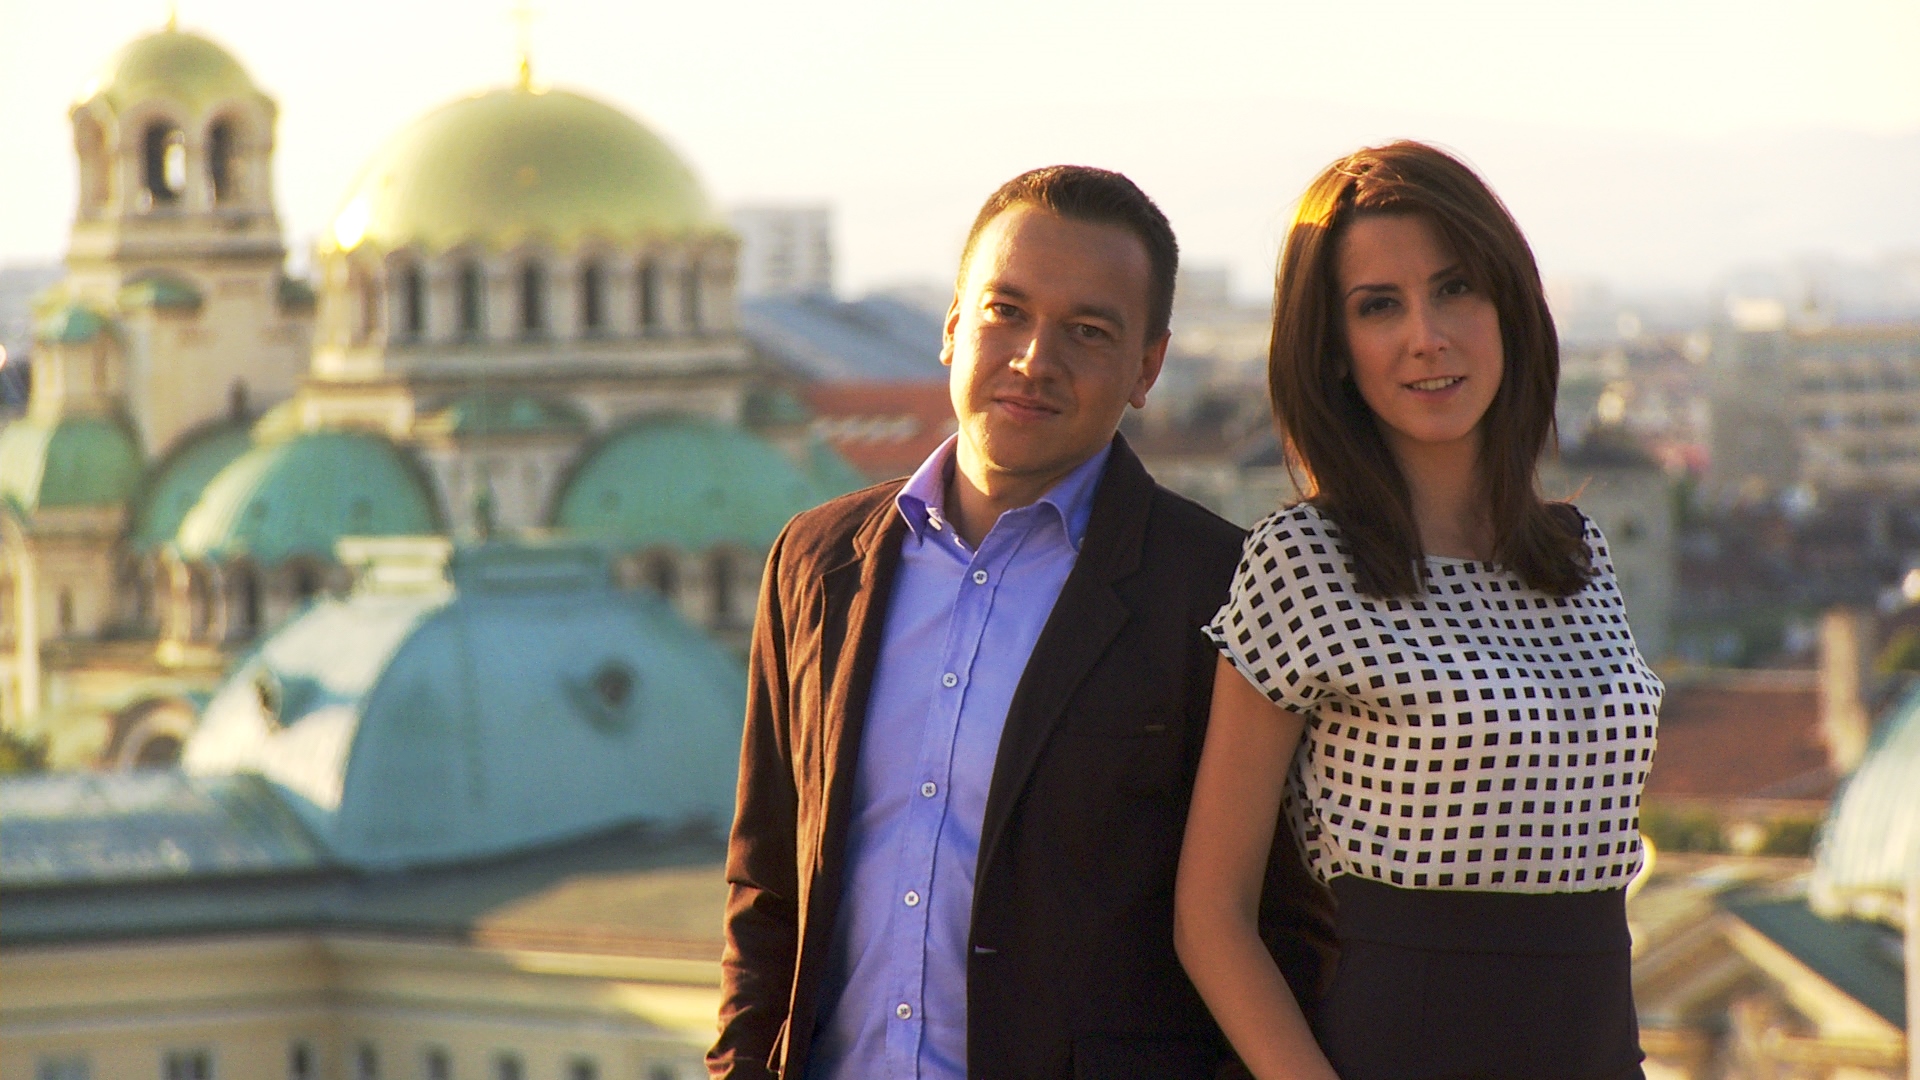 Росен Цветков и Ася Методиева на покрива на сградата на БНТ